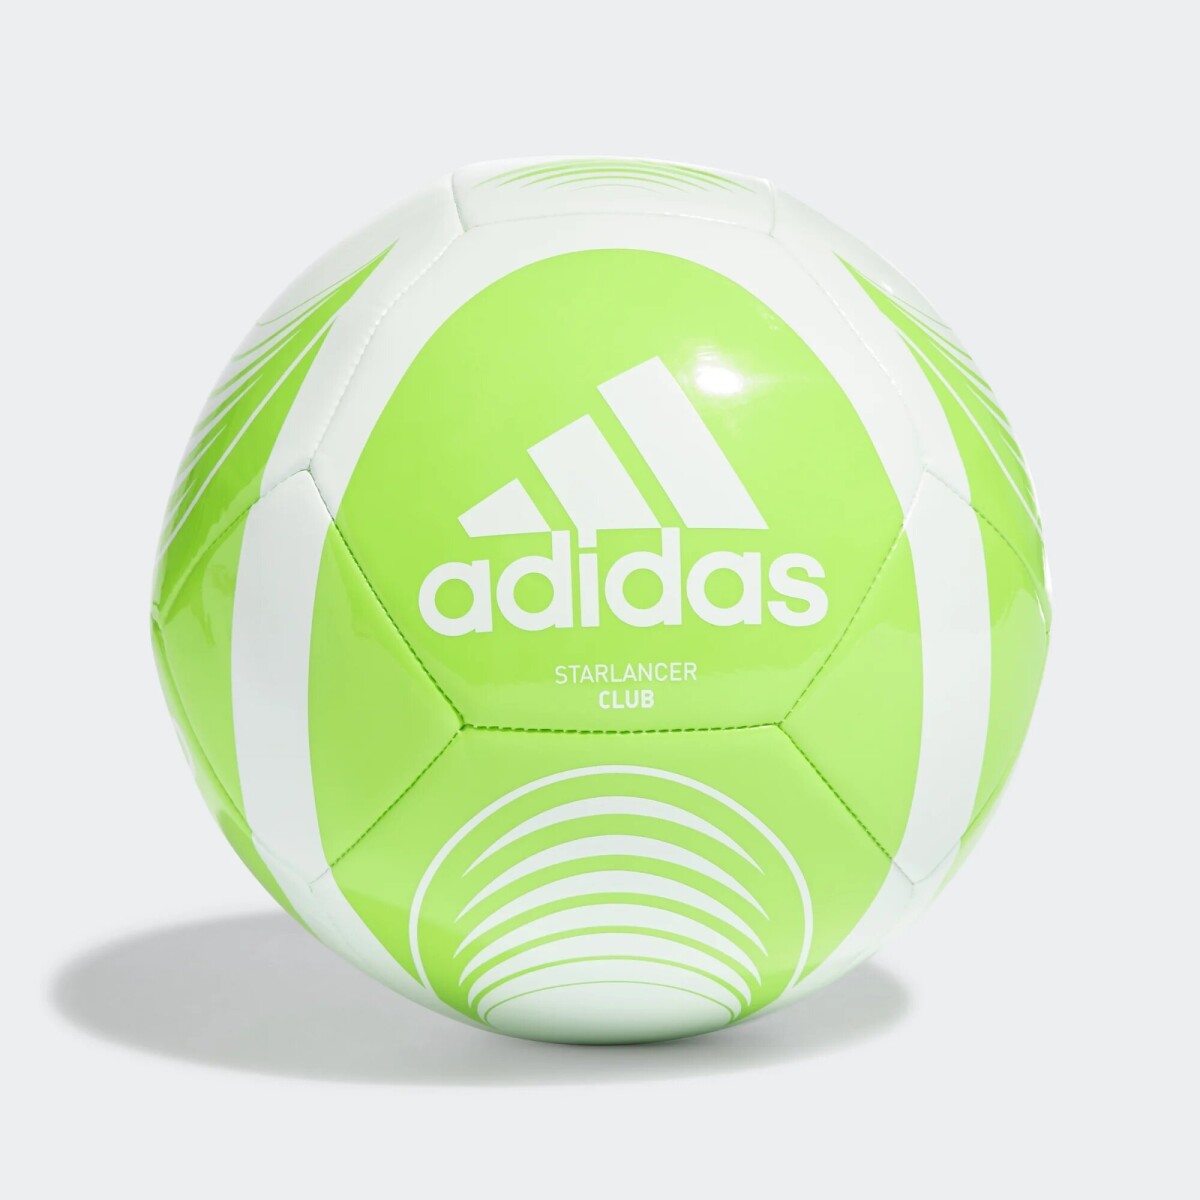 Pelota Adidas Futbol Starlancer Clb - Color Único 